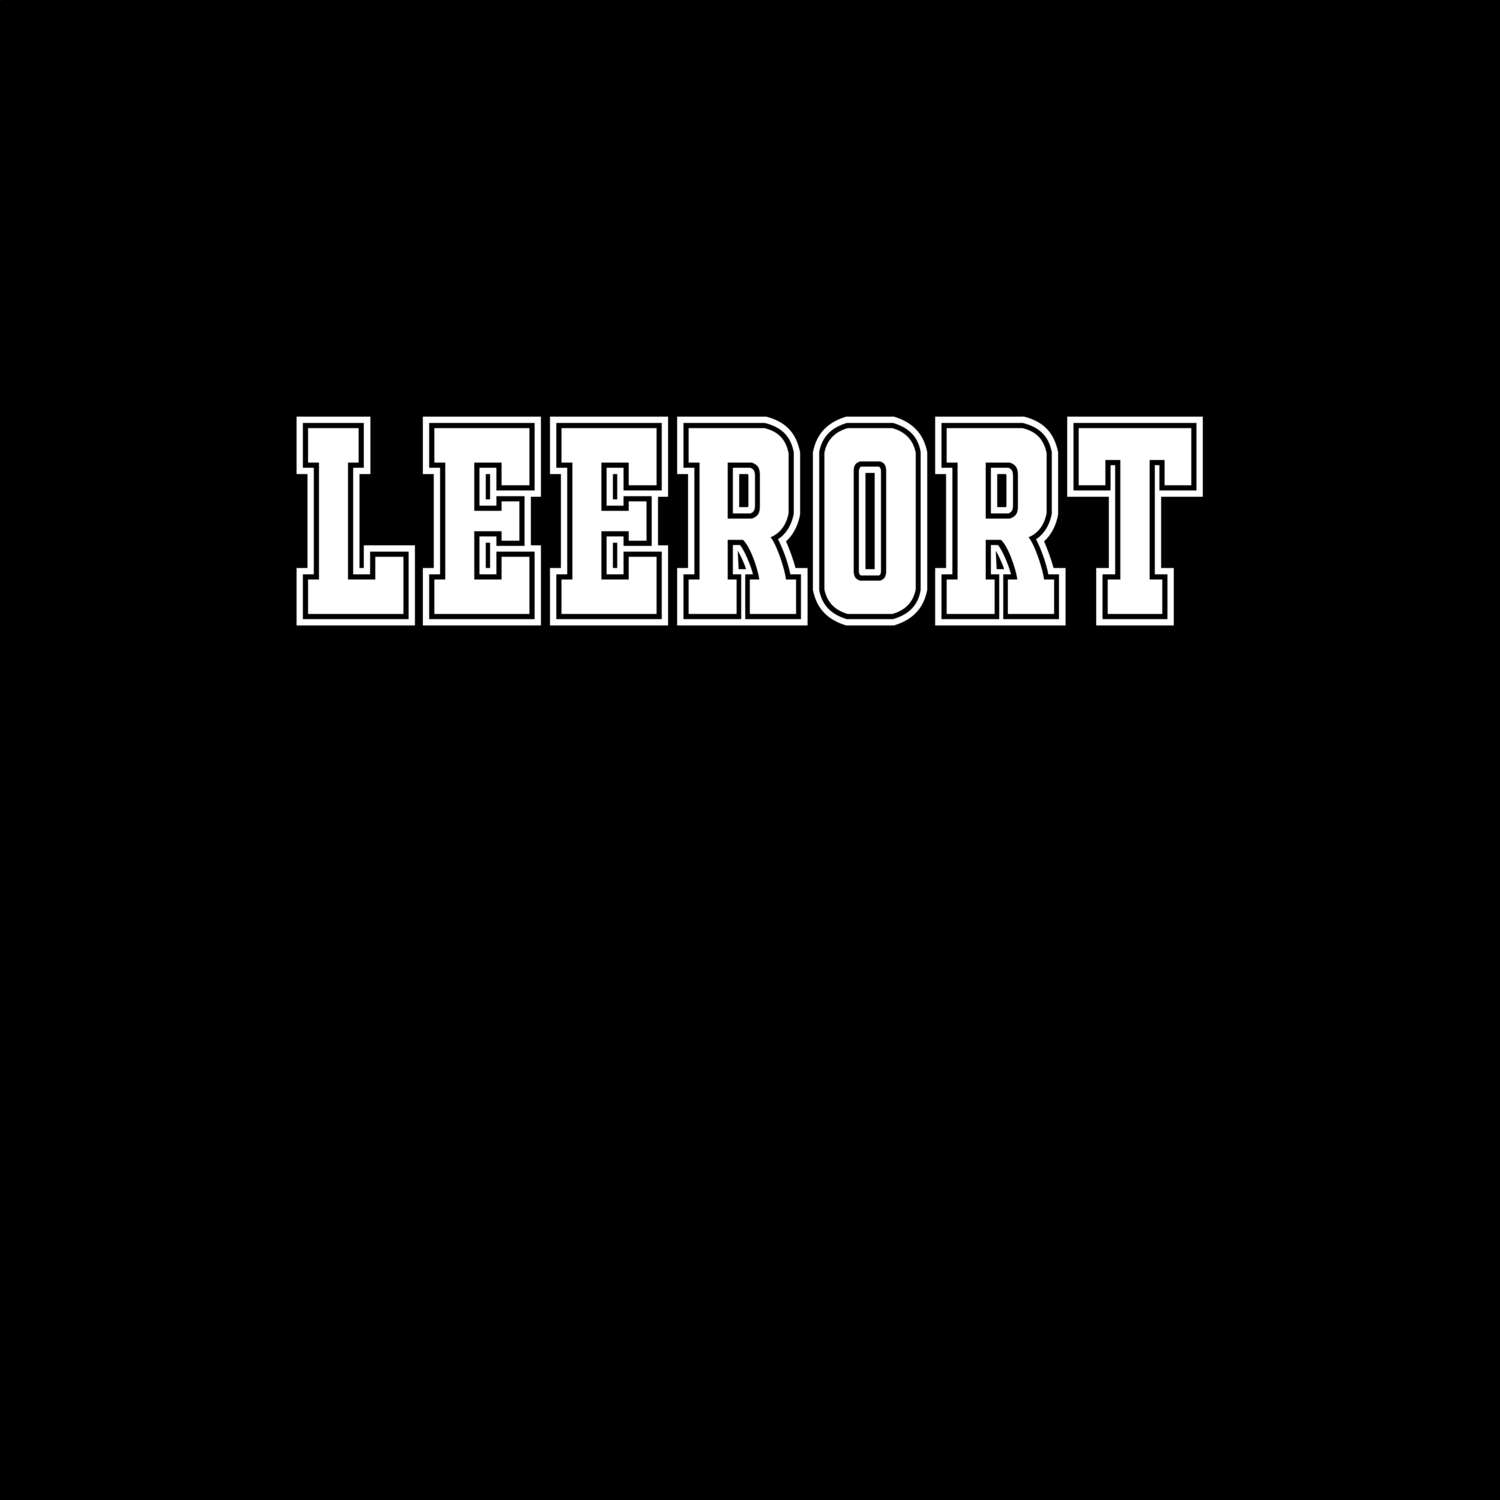 Leerort T-Shirt »Classic«